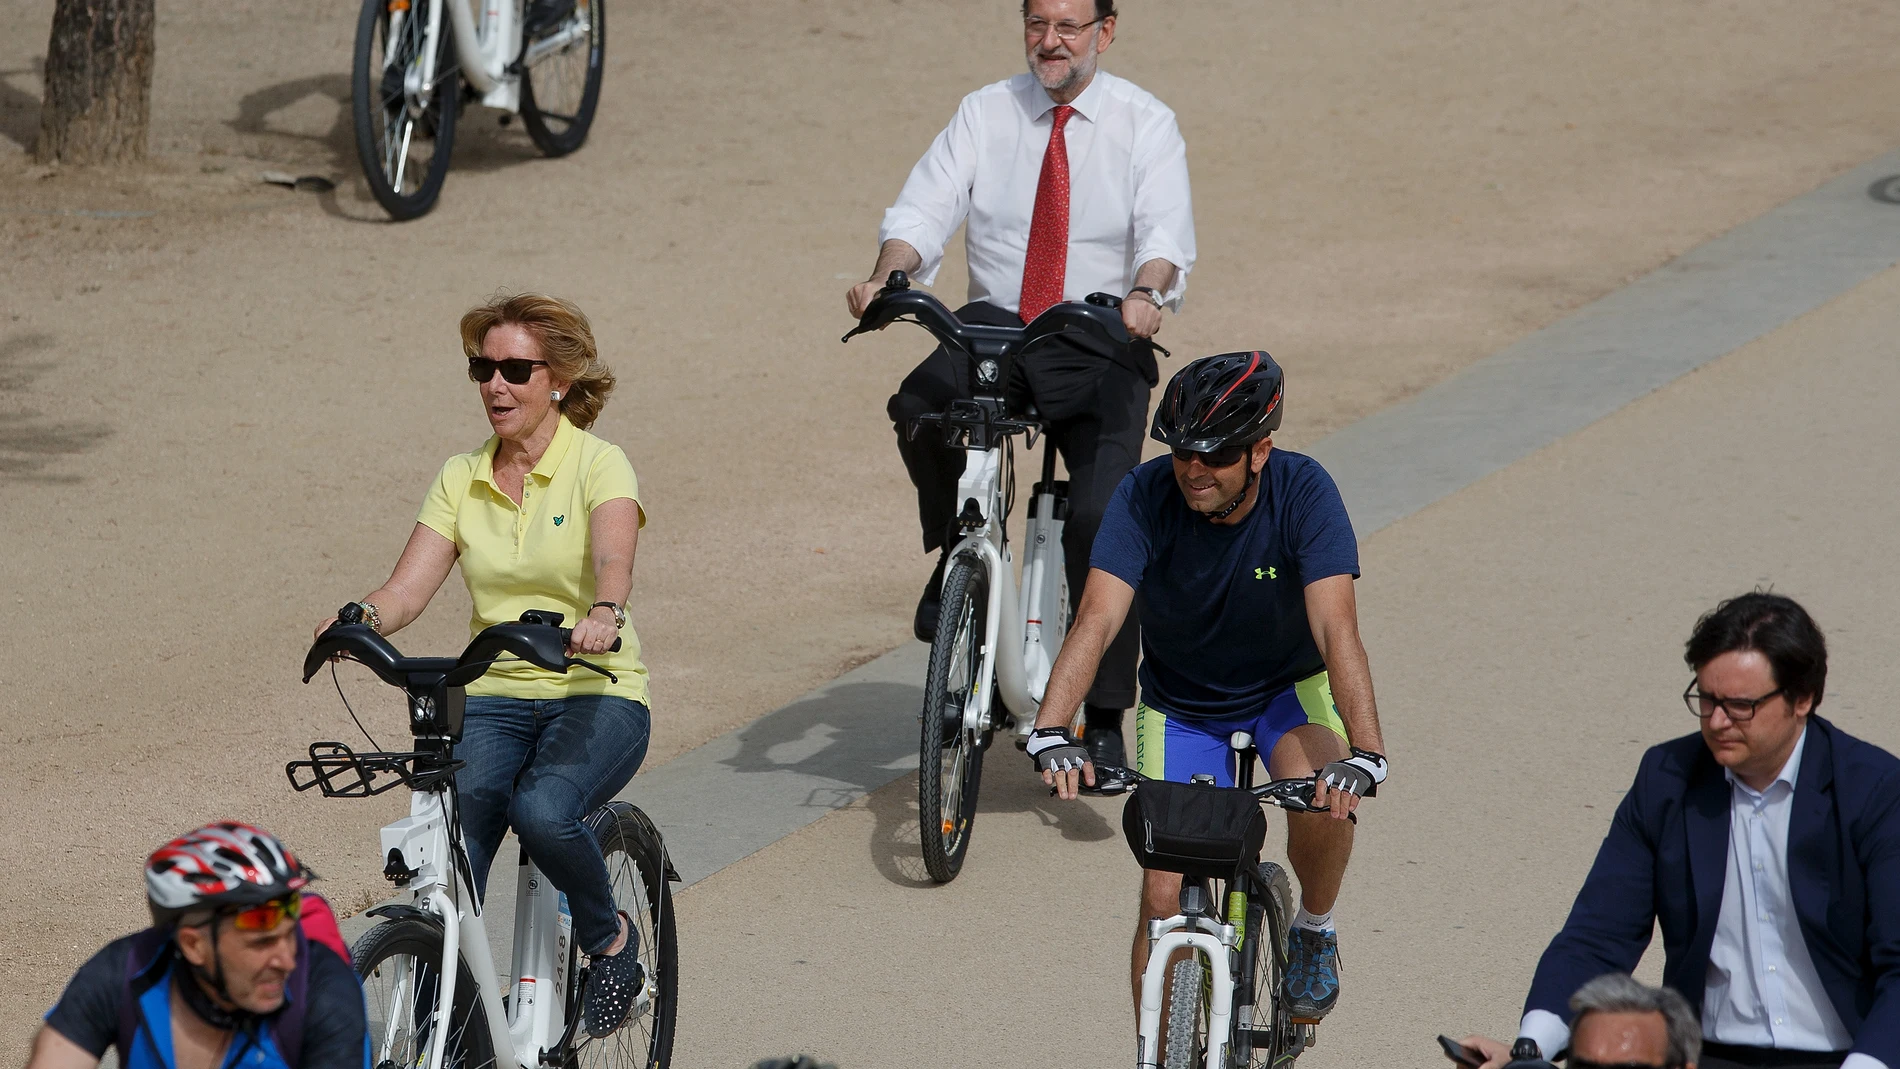 El paseo en bici y el chotis entre los momentos más anecdóticos de la campaña electoral.